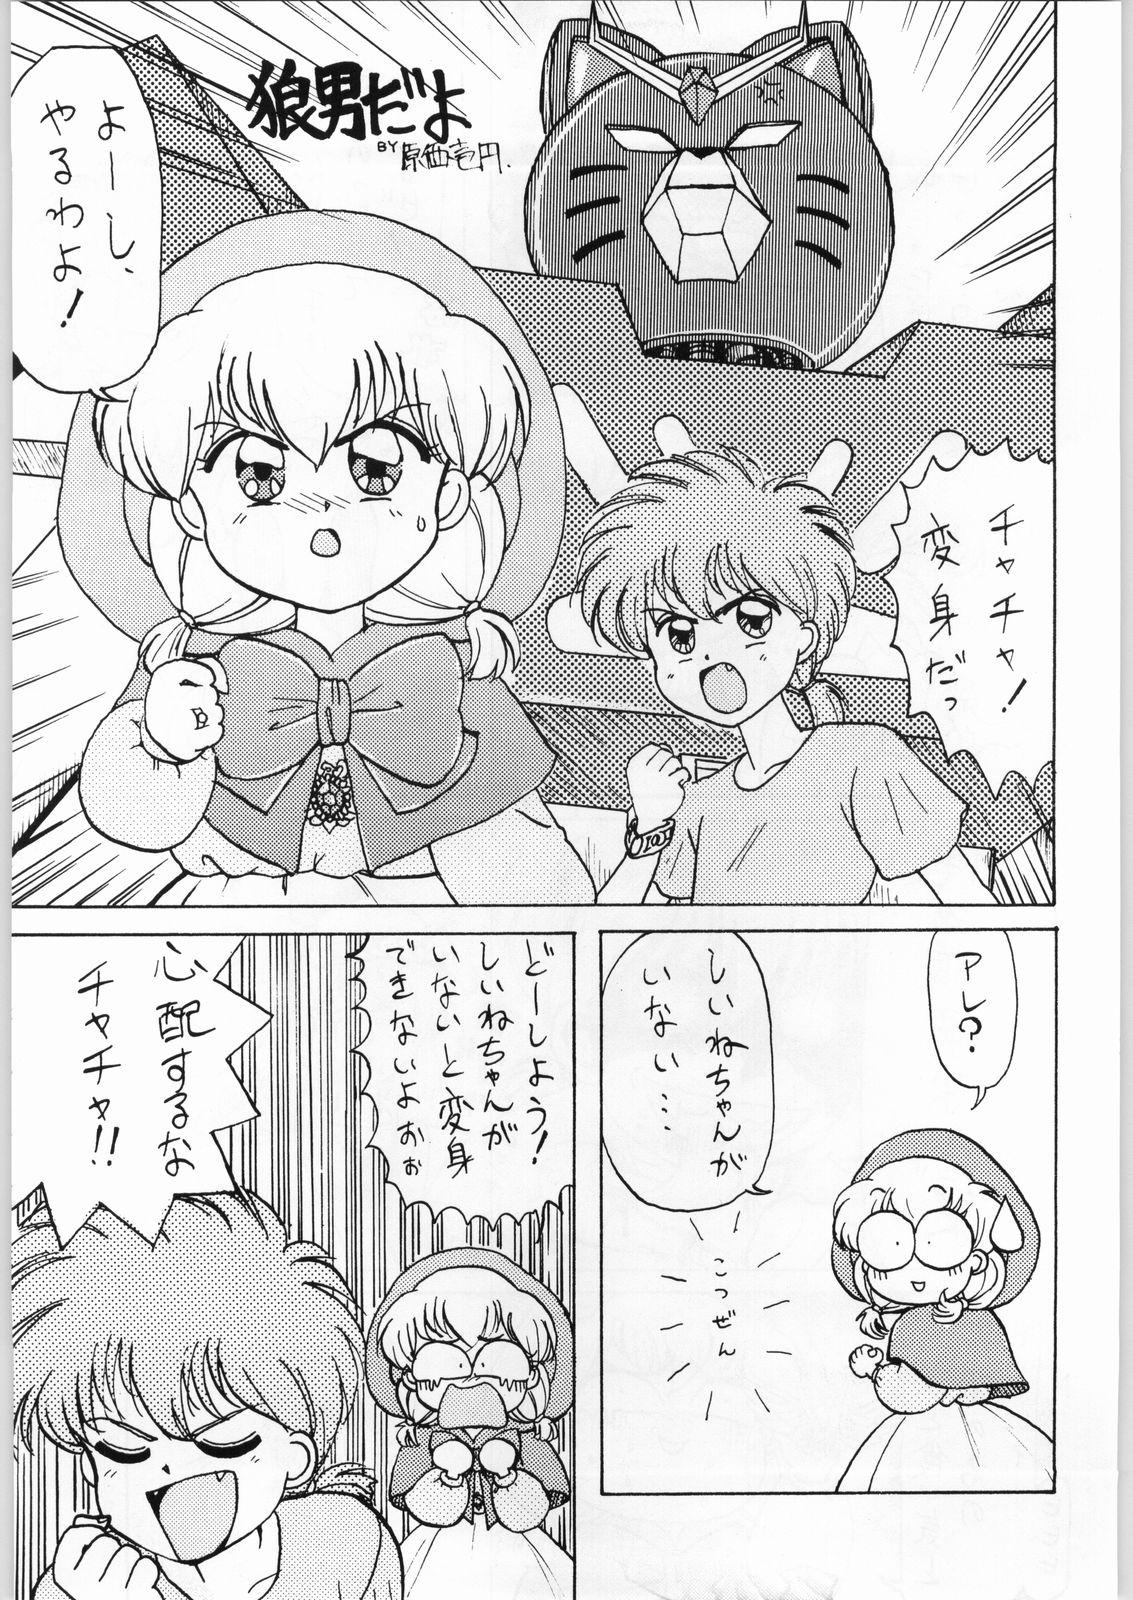 Fudendo Dance of Princess 3 - Sailor moon Tenchi muyo Akazukin cha cha Minky momo Ng knight lamune and 40 Peituda - Page 6